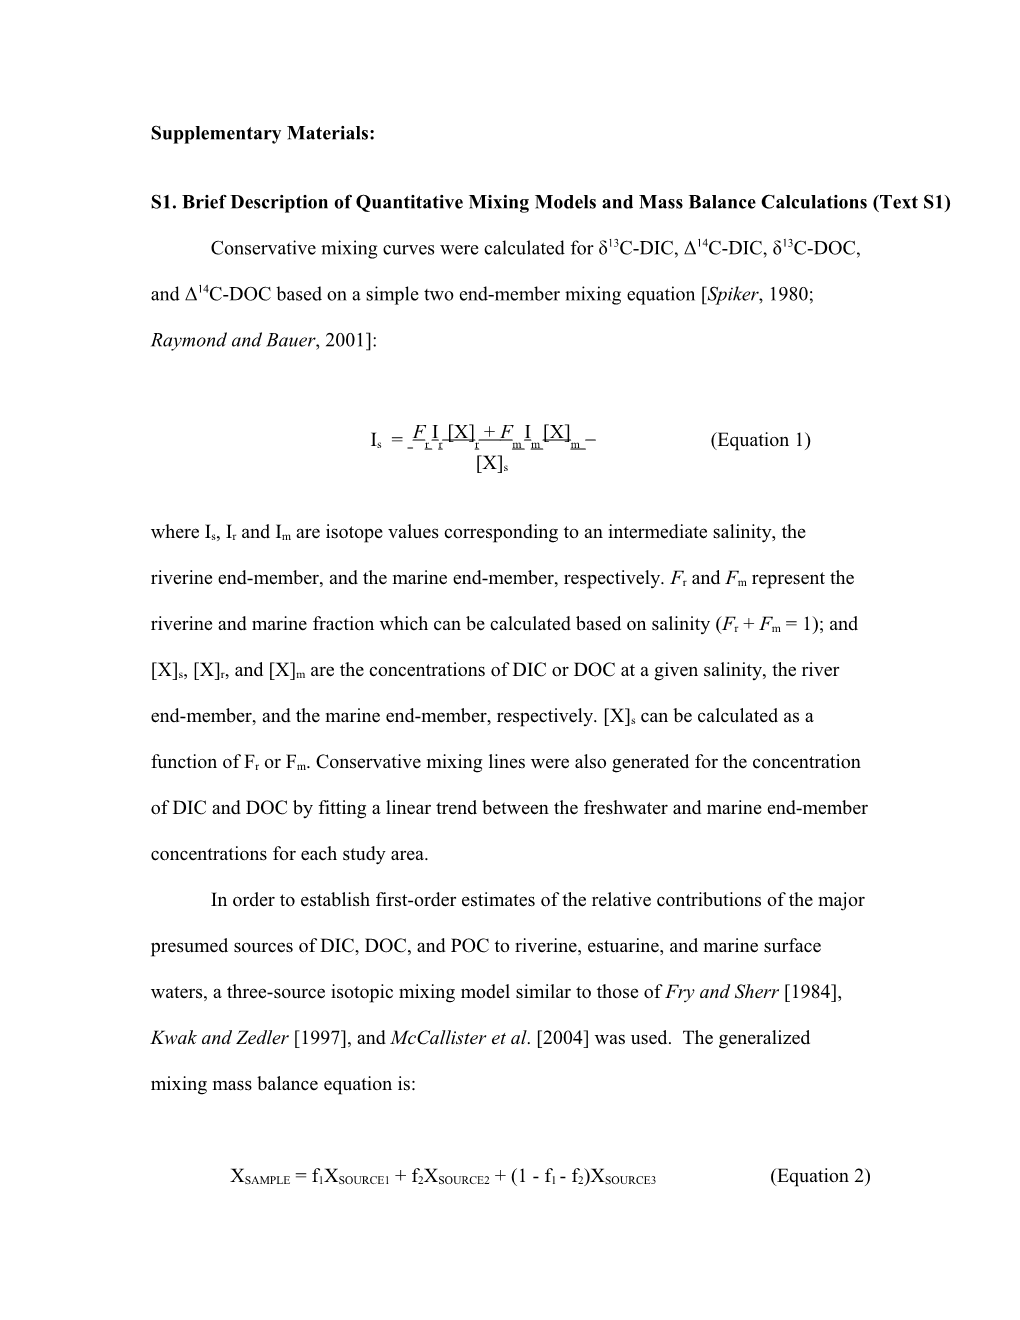 S1. Brief Description of Quantitative Mixing Models and Mass Balance Calculations (Text S1)